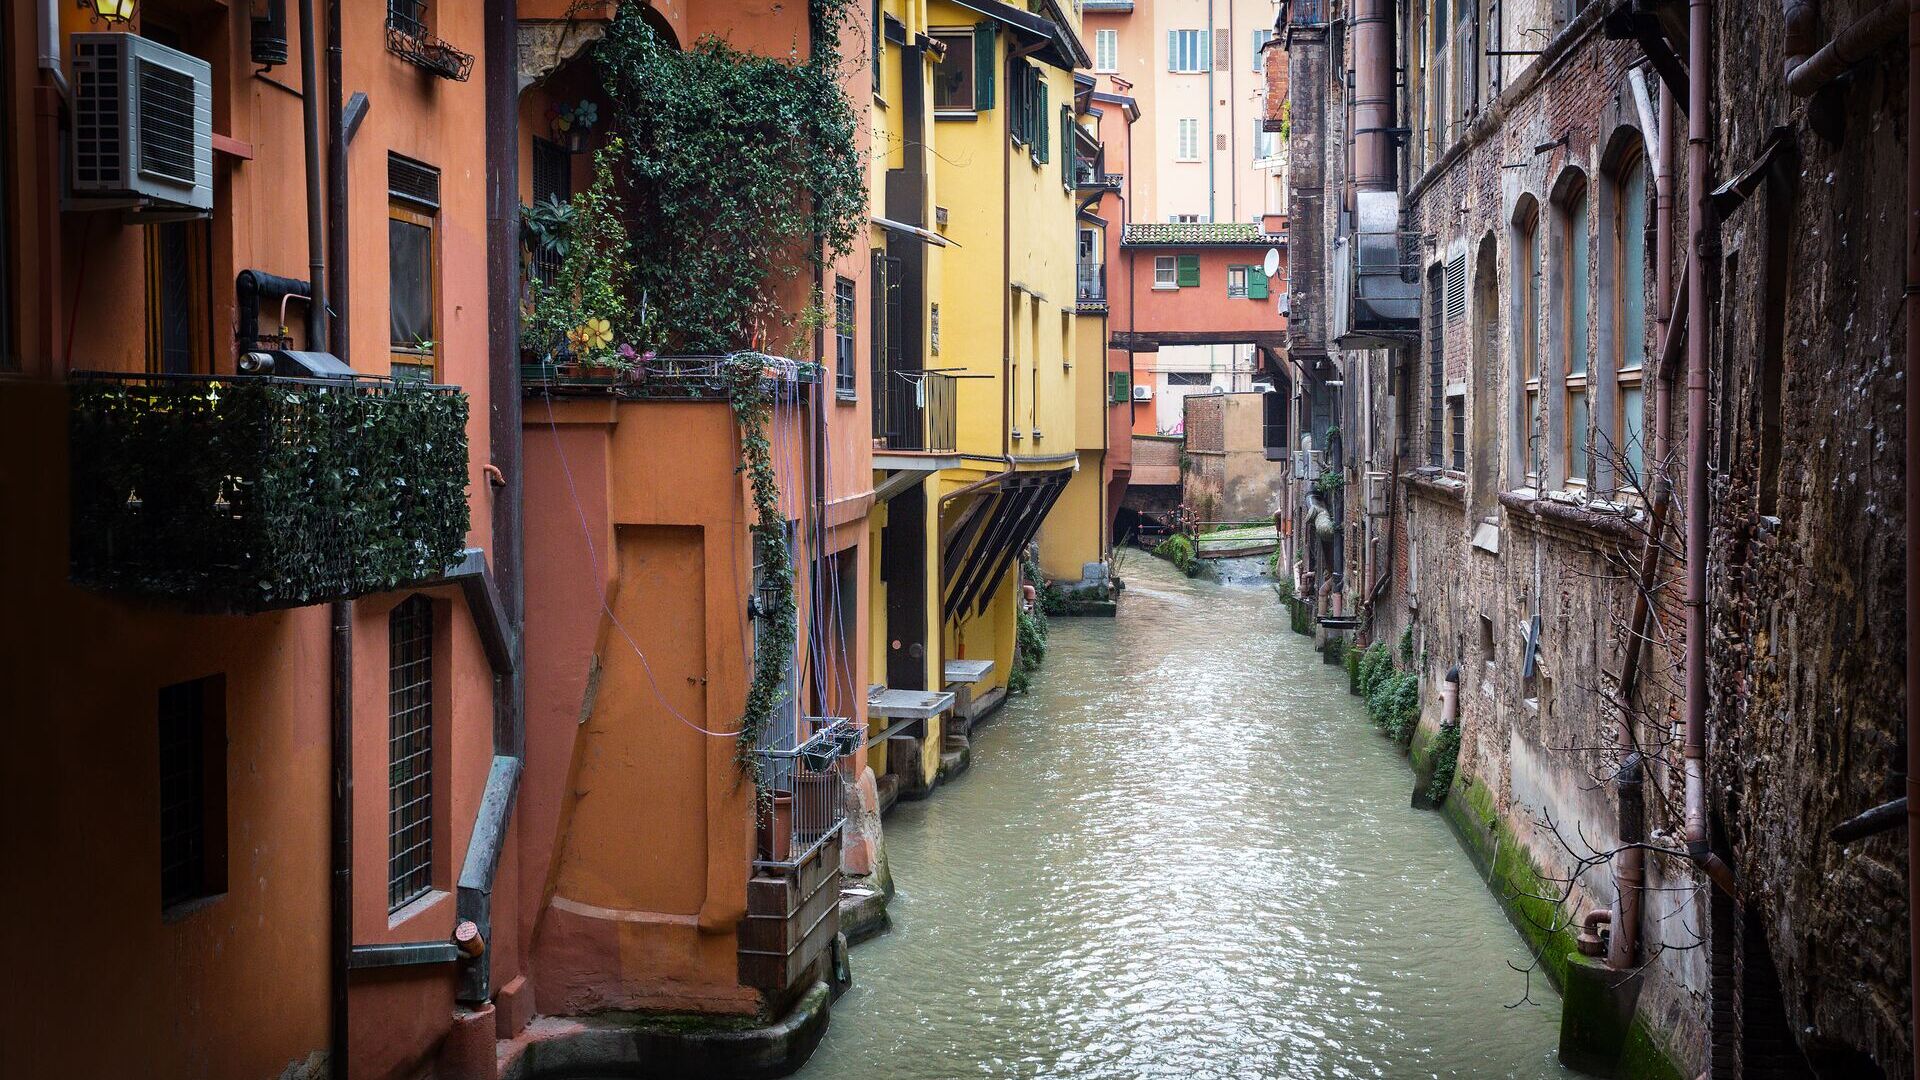 Pioggia: la finestrella di via Piella, affacciata sul Canale delle Moline, è uno dei “luoghi acquatici” più caratteristici del centro di Bologna